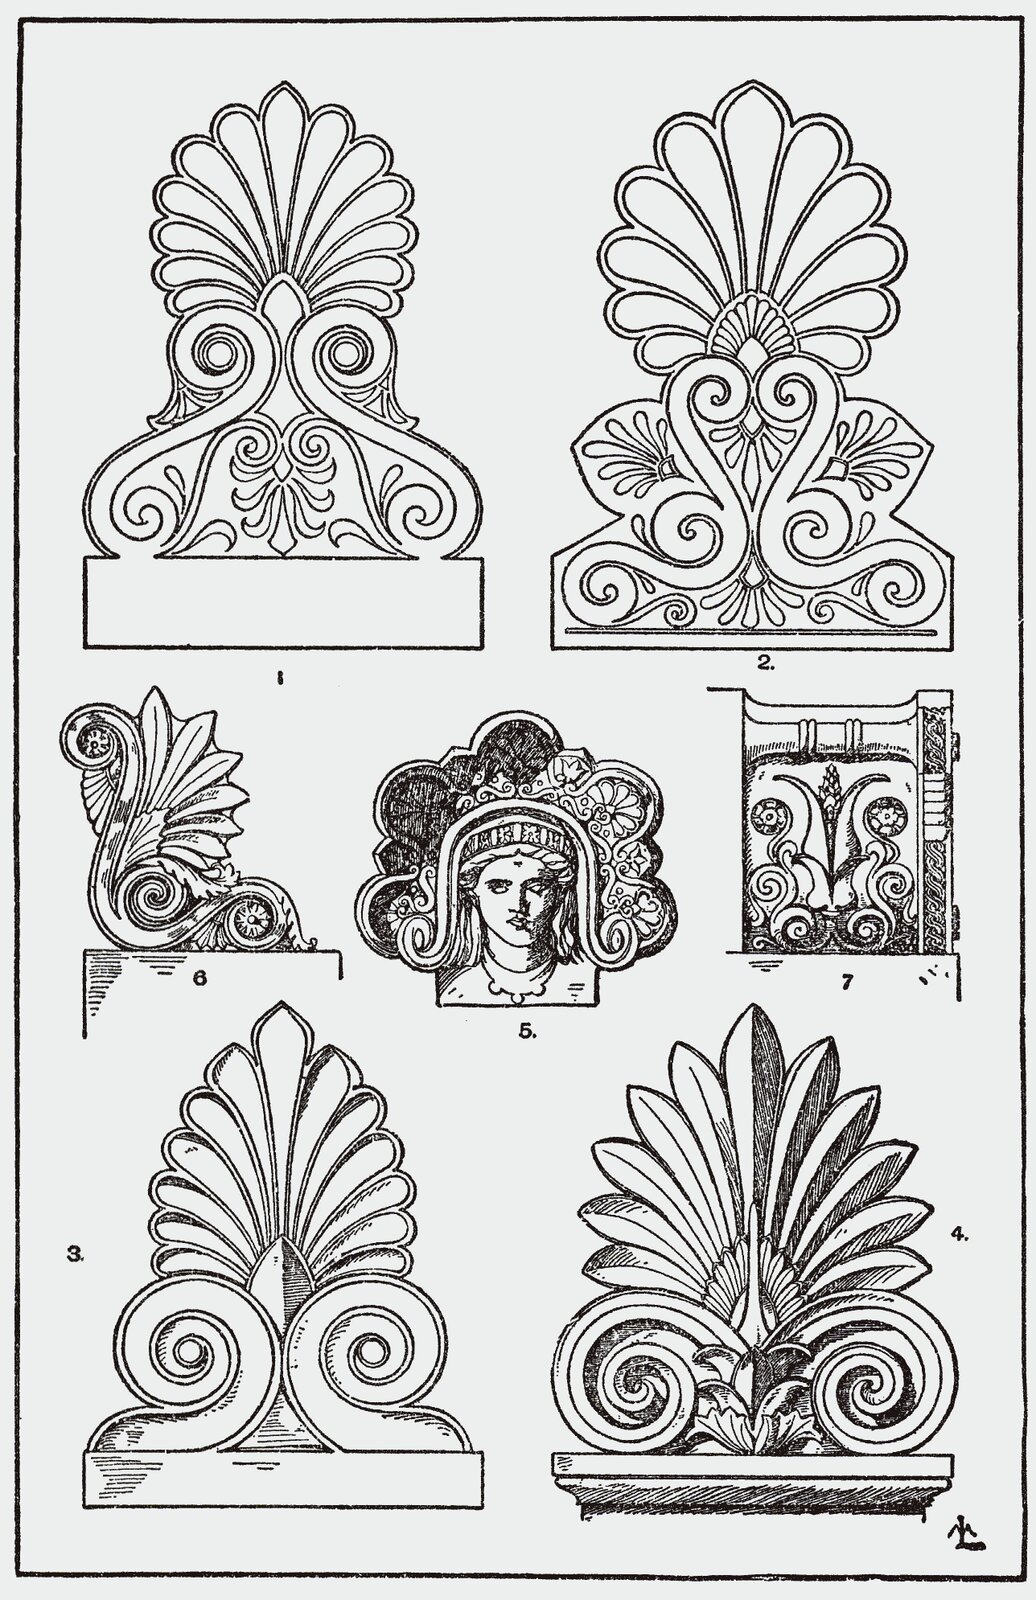 Ilustracja przedstawiająca ornament – palmeta. Element dekoracyjny naszkicowany jest czarnym kolorem bez wypełenień. Na ilustracji widocznych jest siedem elementów. Każdy element kształtem przypomina liście tropikalnej rośliny. Tylko jeden z nich (który jest po środku) to element wzbogacony o ludzką twarz.